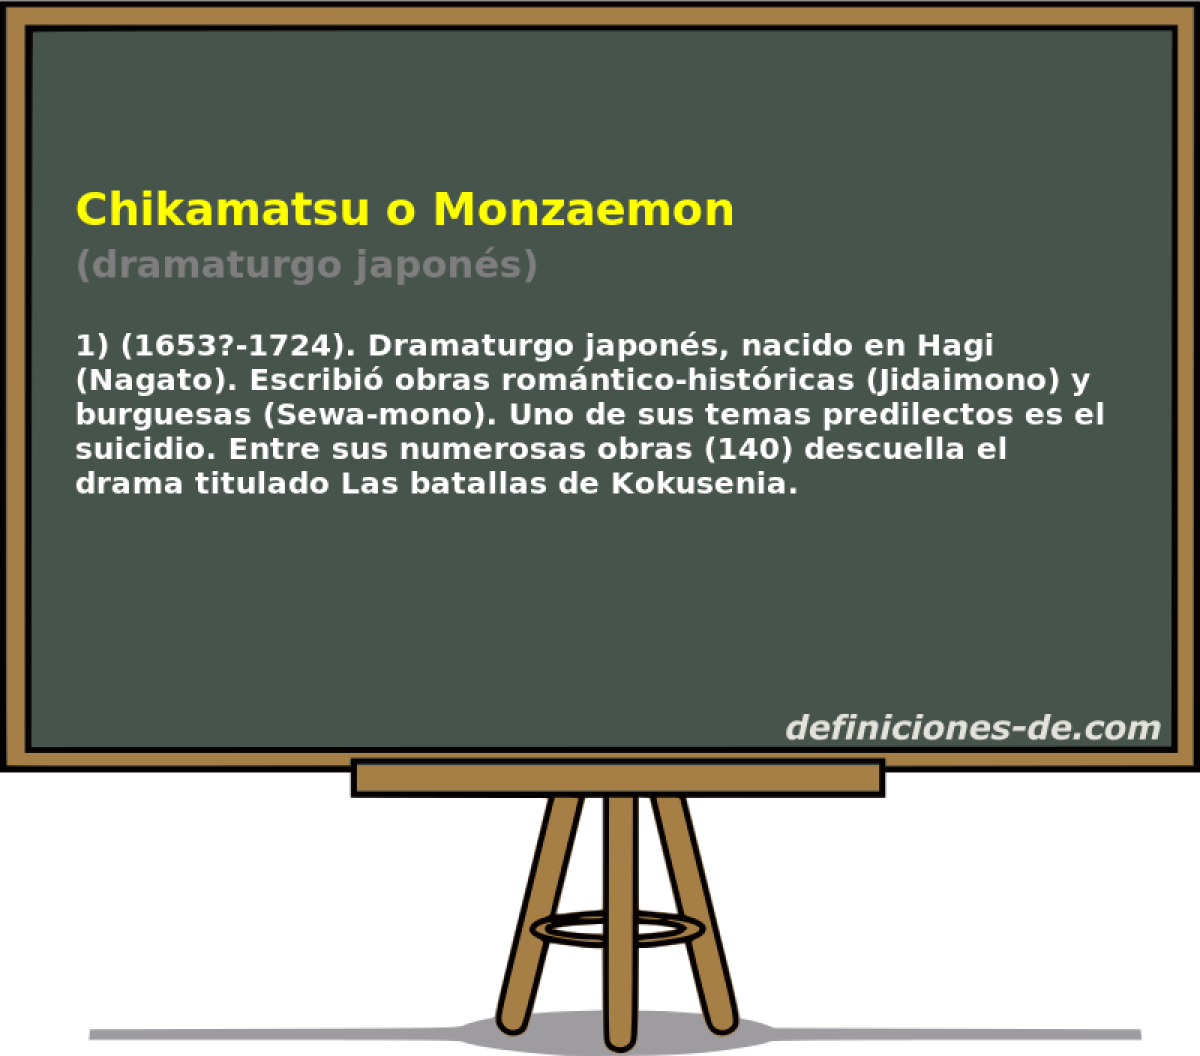 Chikamatsu o Monzaemon (dramaturgo japons)